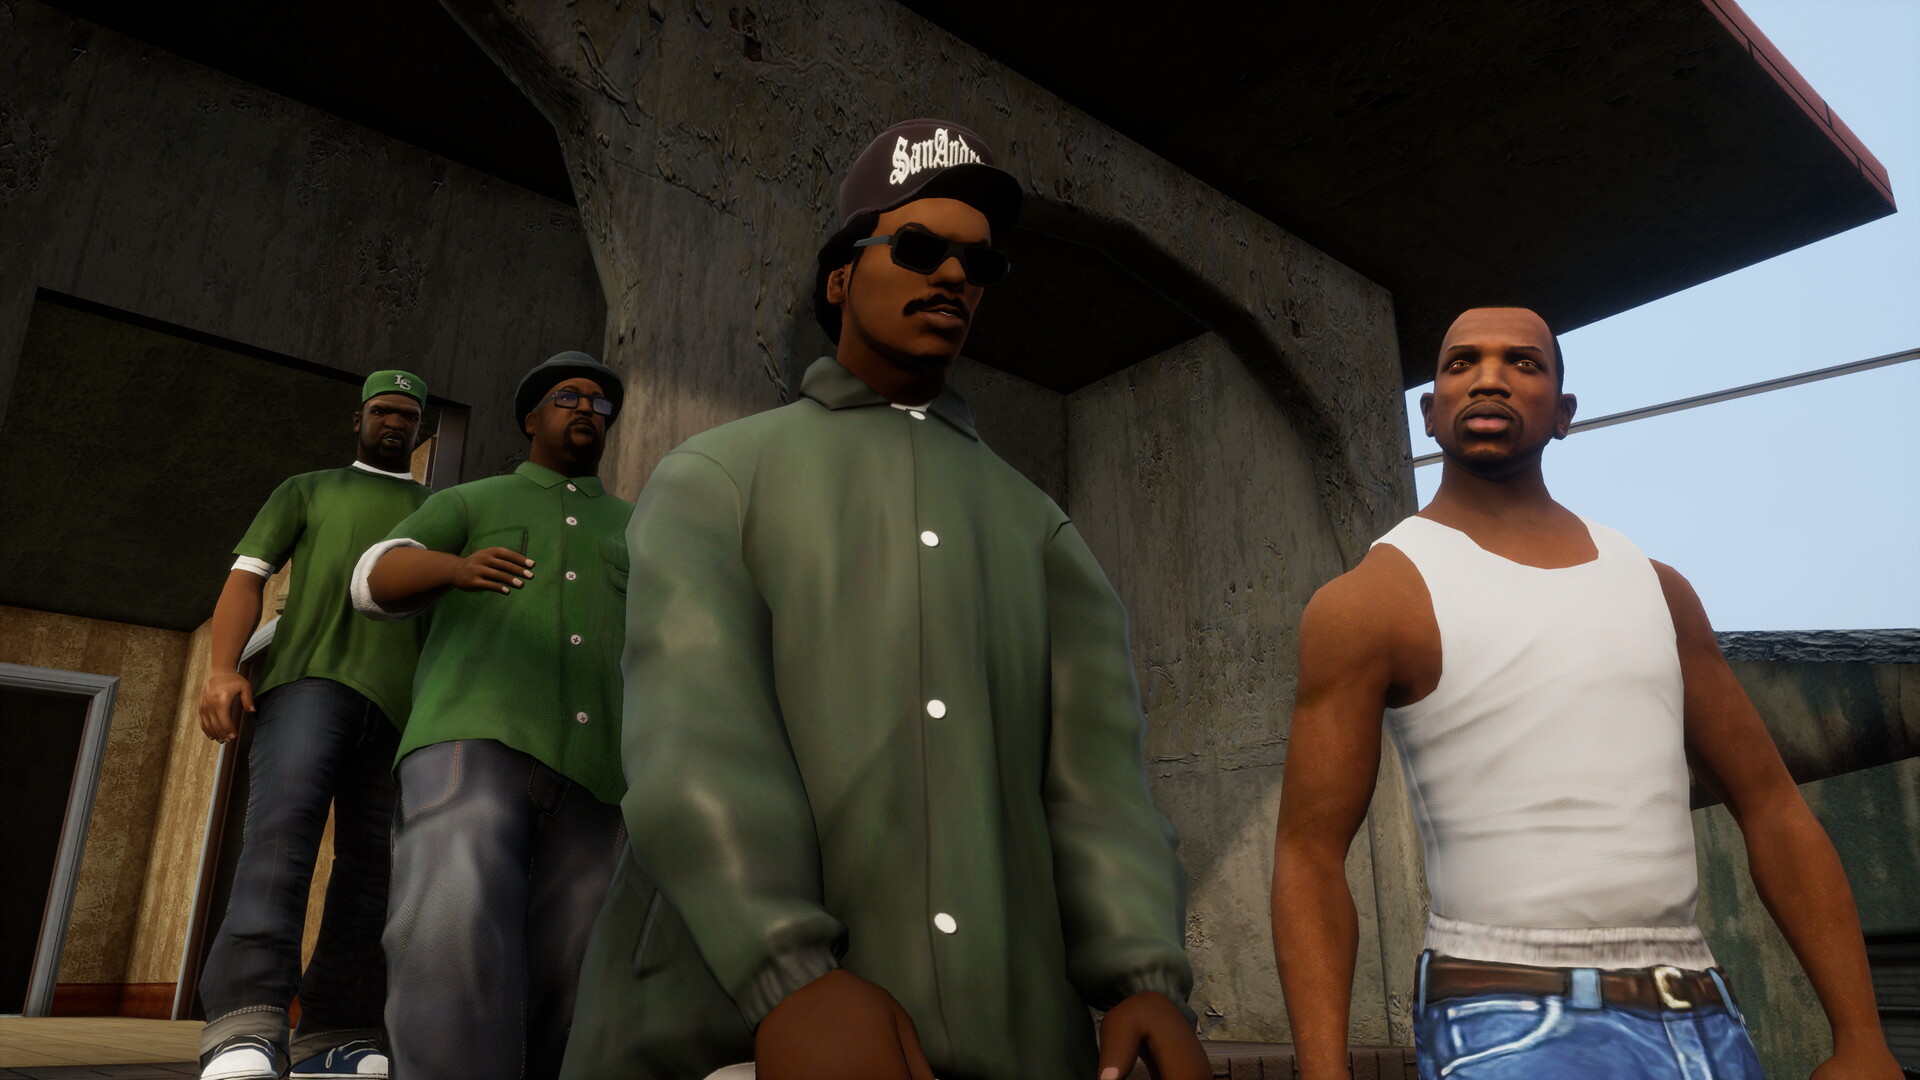 Jak rozwinęła się seria Grand Theft Auto? Od prostej strzelanki do skomplikowanych historii i bohaterów